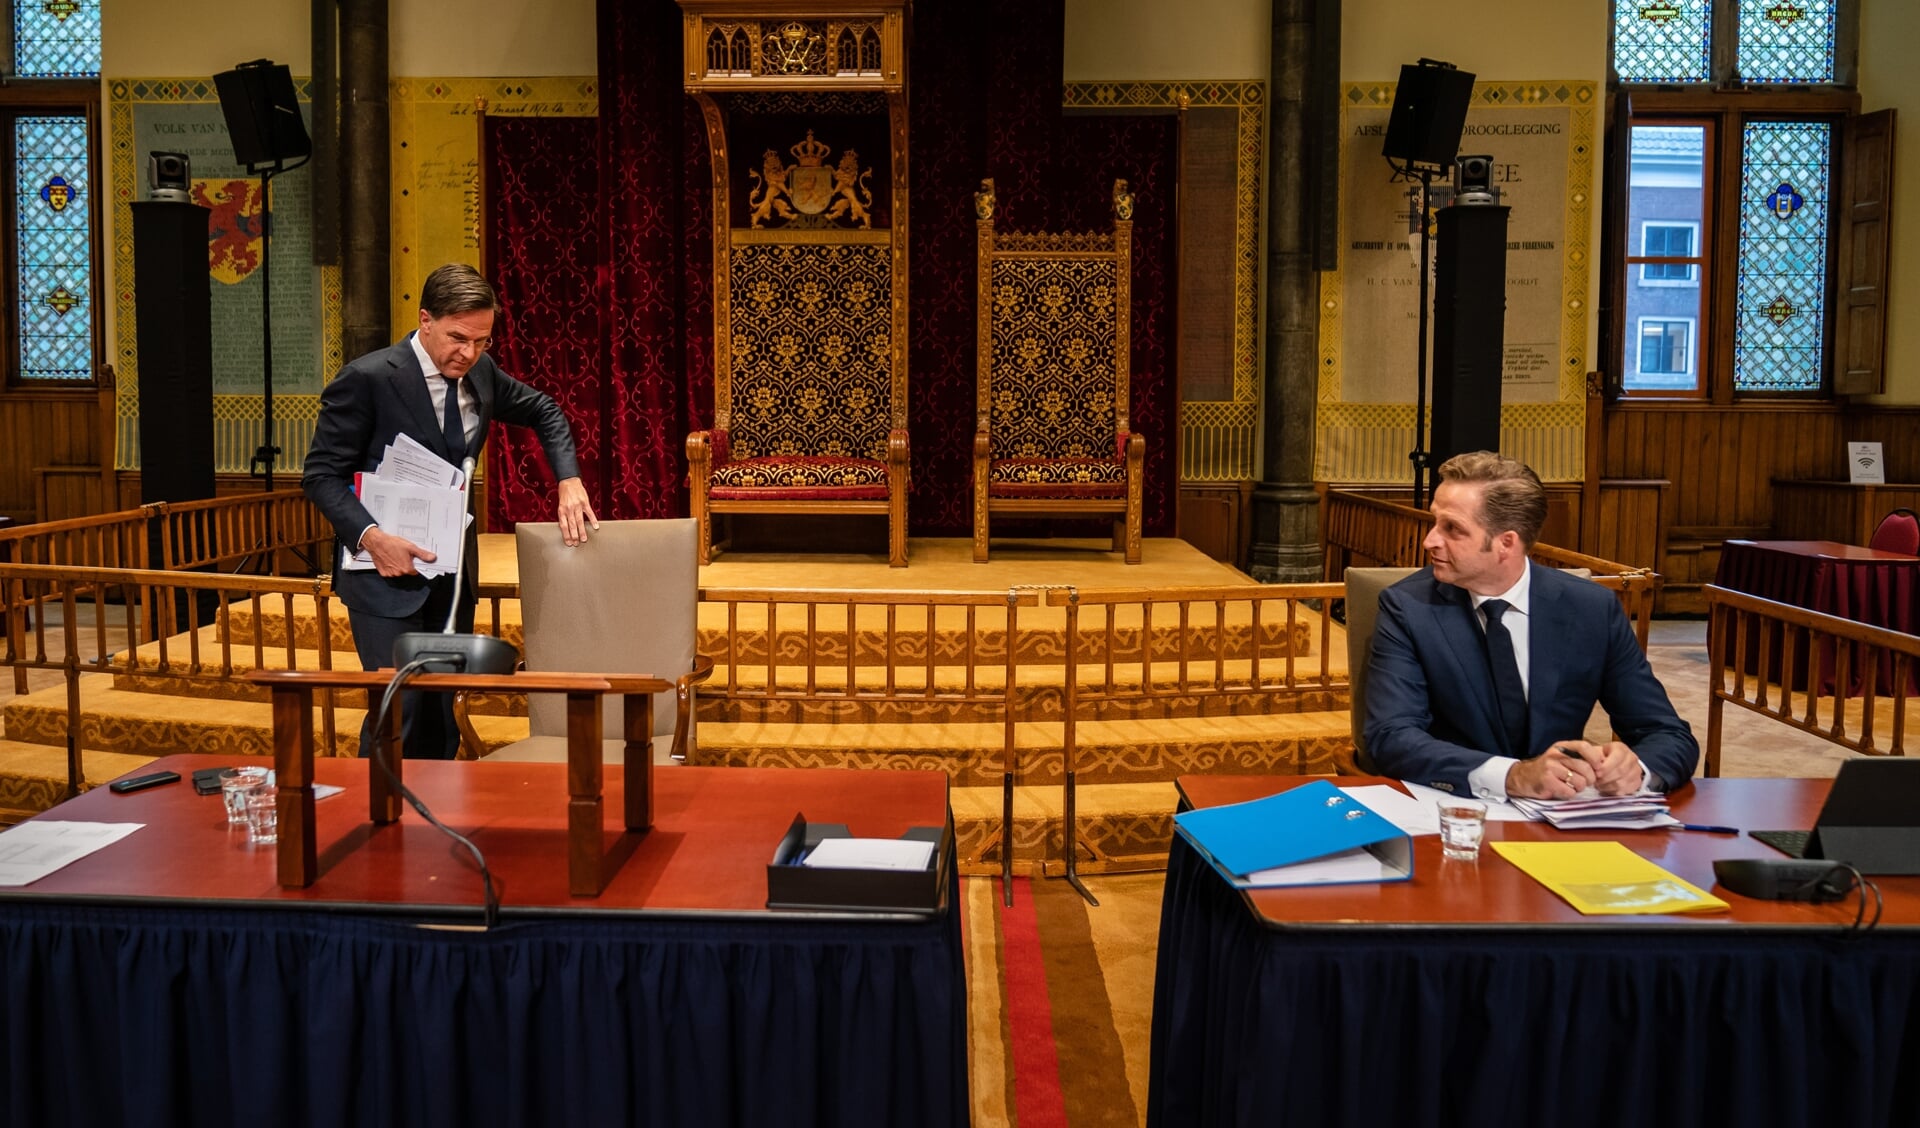 Demissionair premier Mark Rutte en demissionair Minister Hugo de Jonge van Volksgezondheid, Welzijn en Sport (CDA) tijdens een debat over het coronavirus.